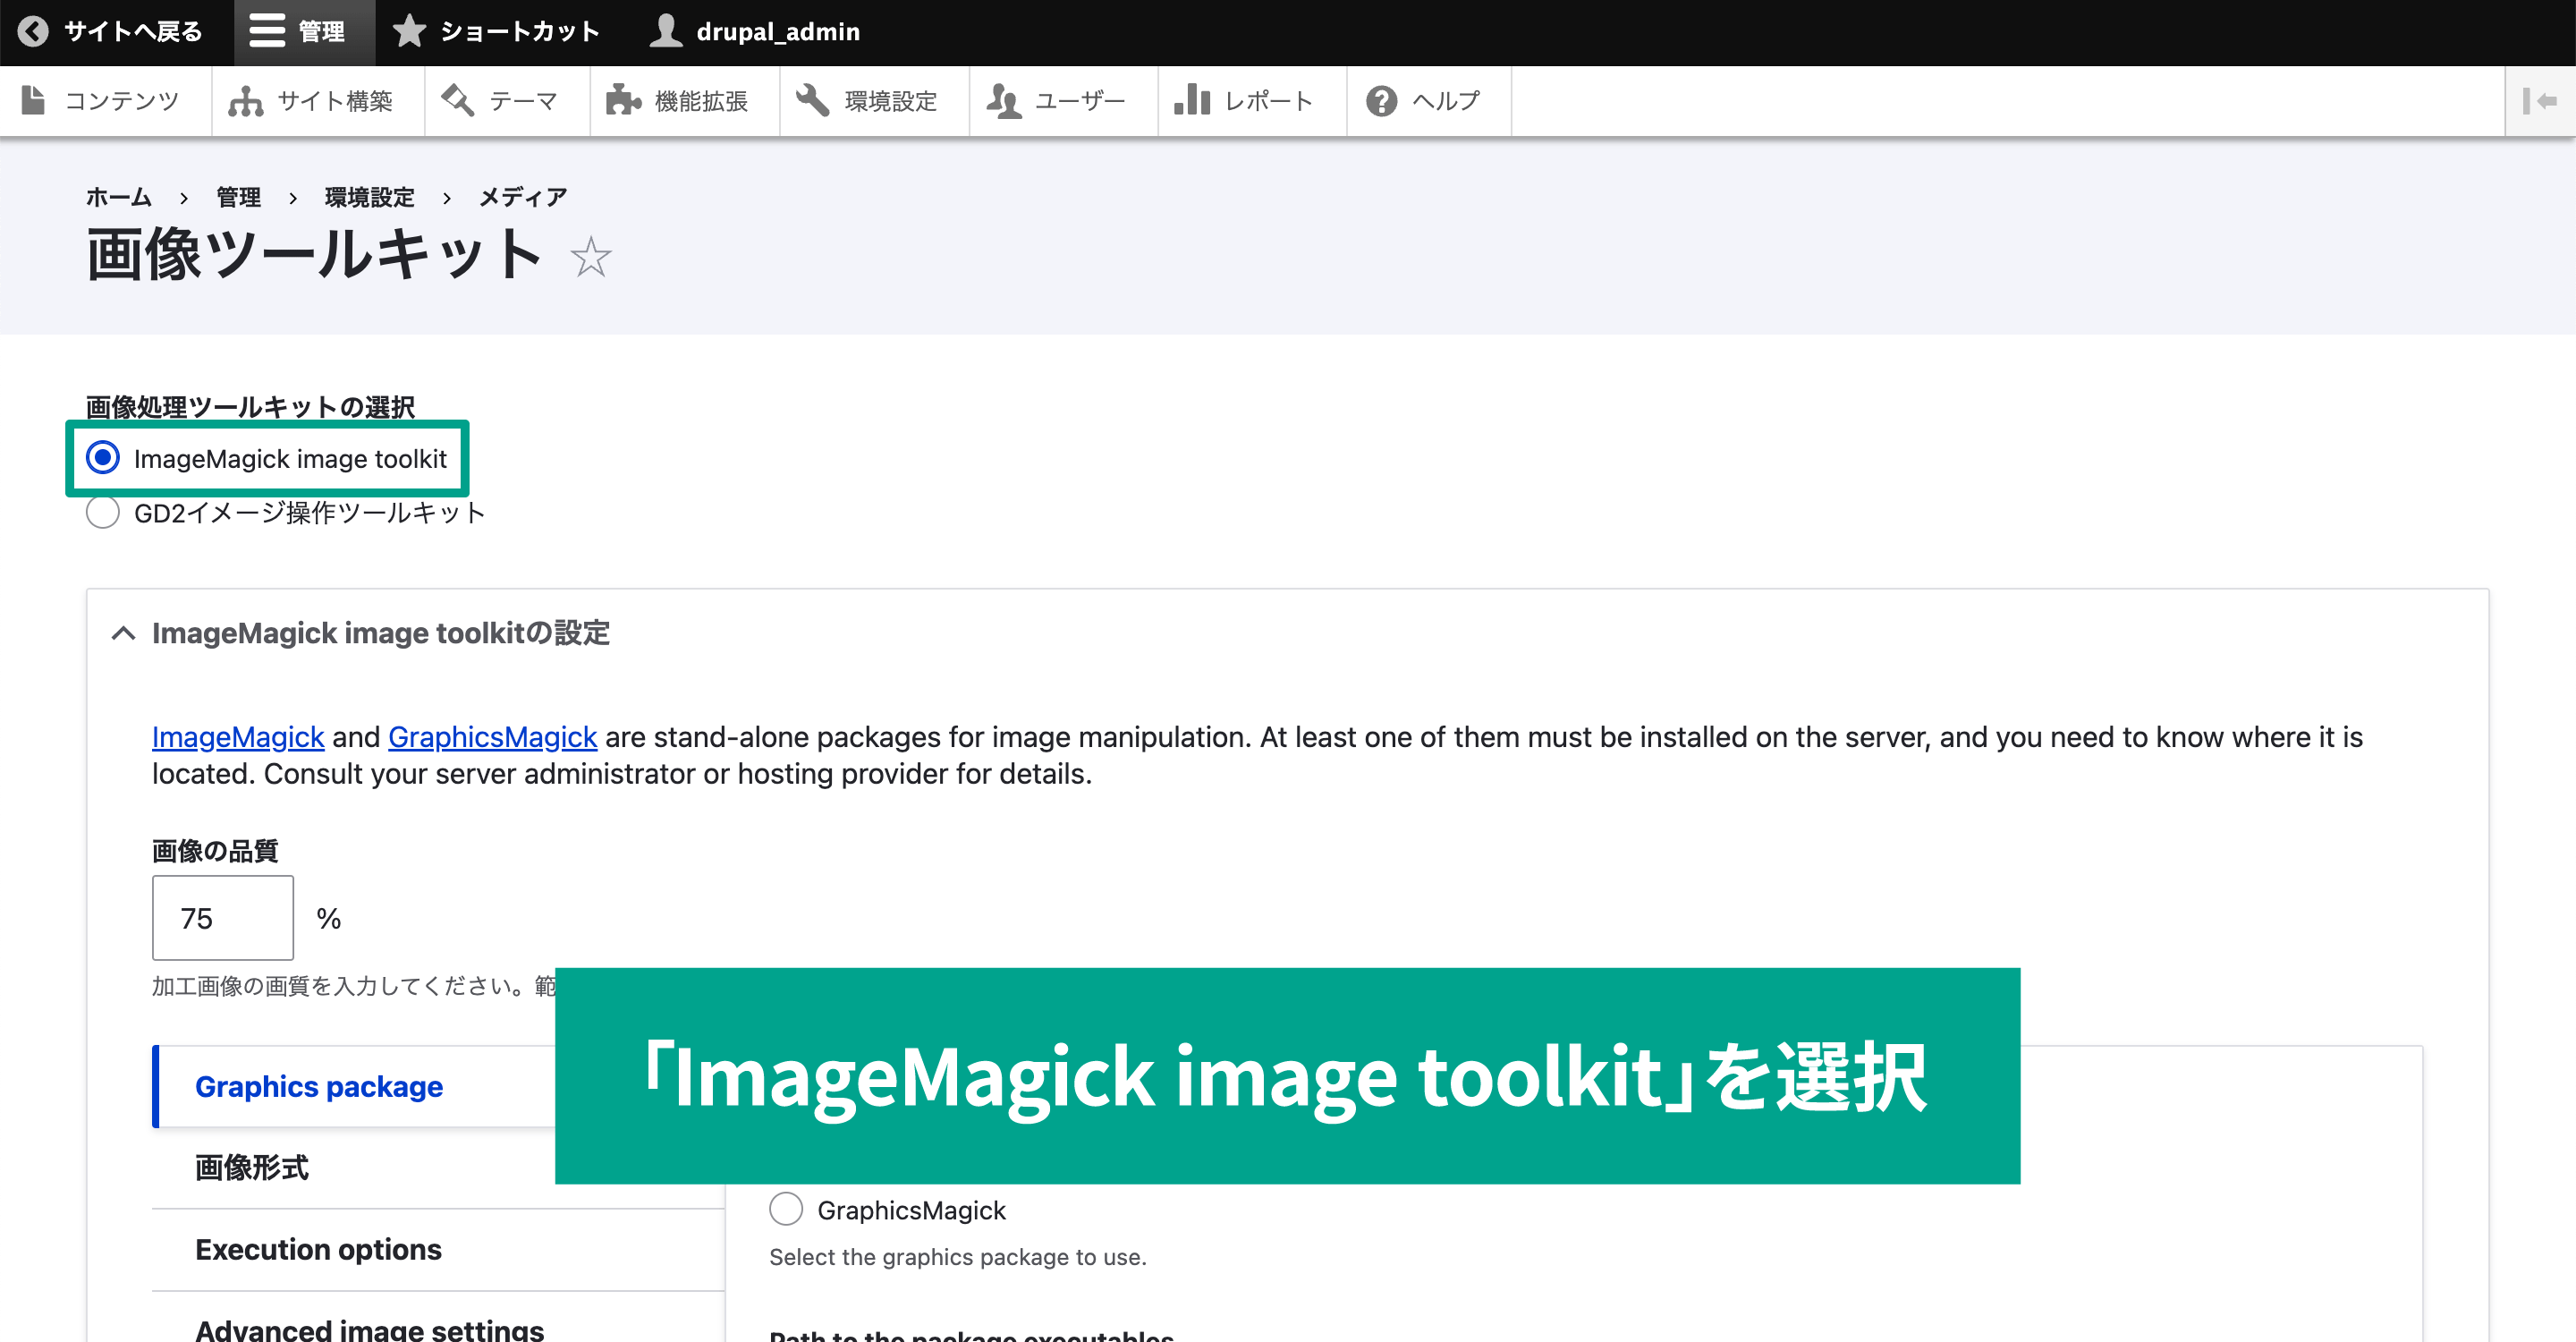 デフォルトで「GD2イメージ操作ツールキット」となっているのを「ImageMagick image toolkit」に変更する。